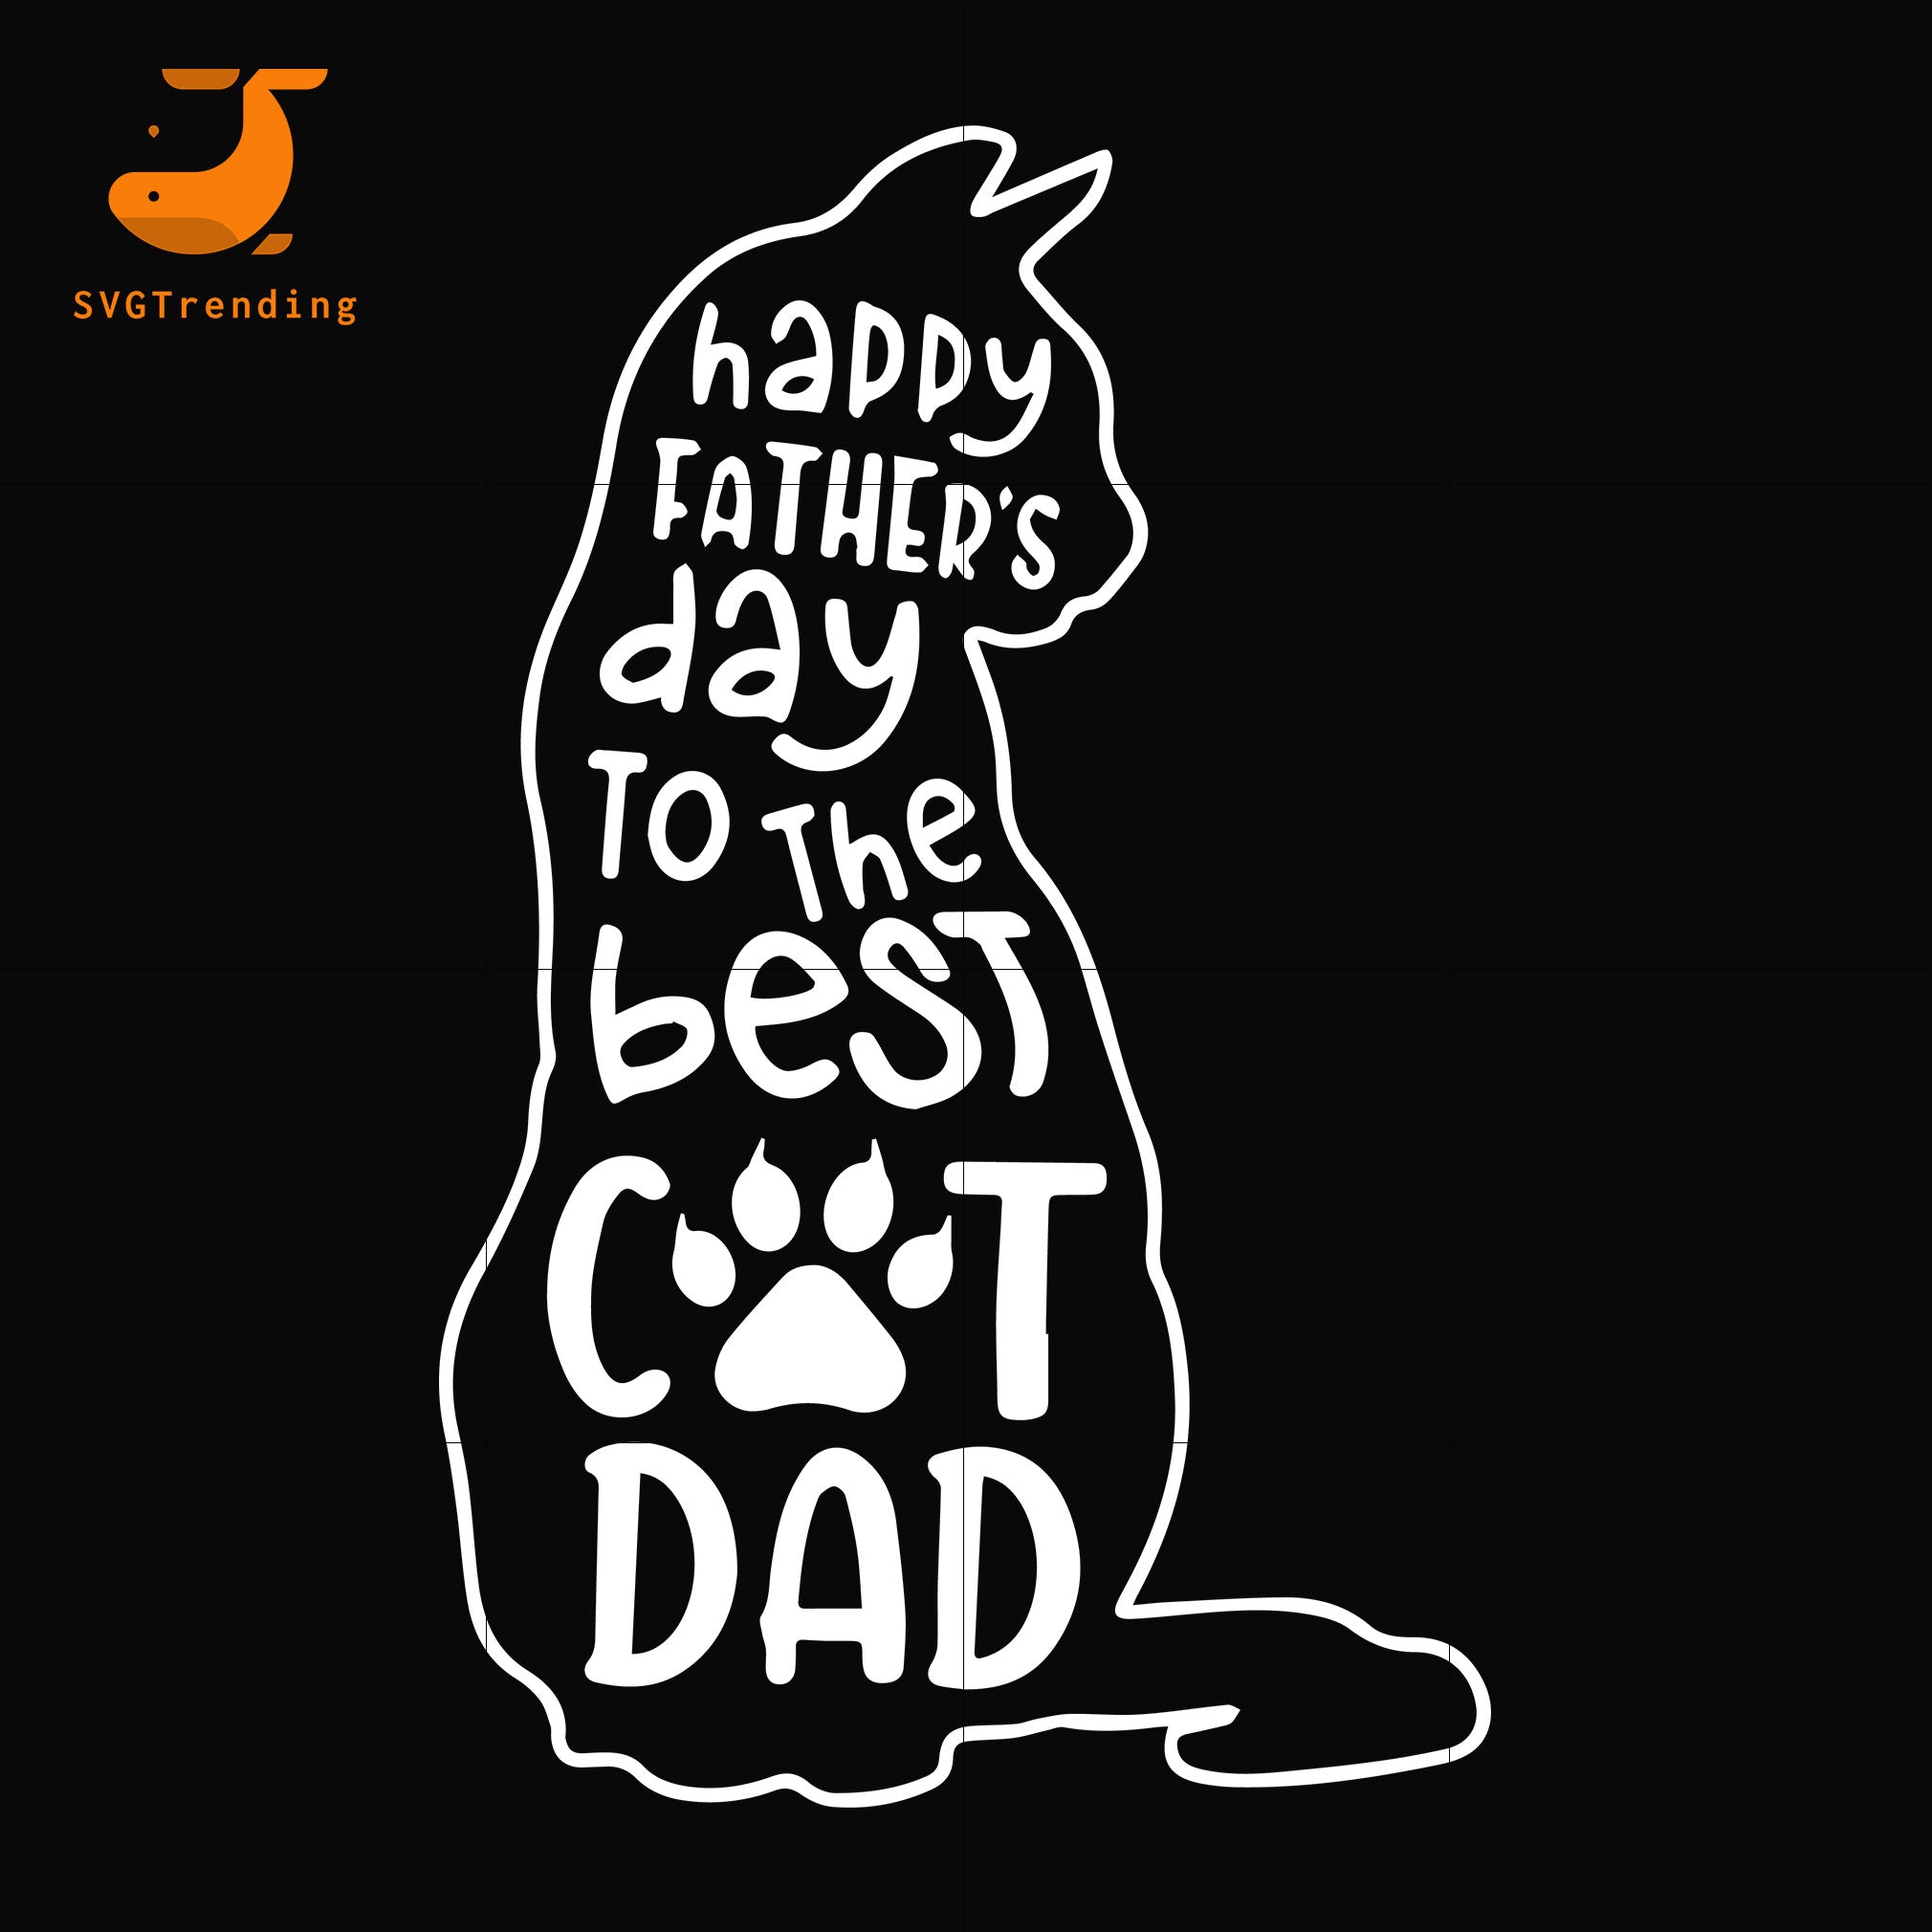 Download Best Cat Dad Svg Png Dxf Eps Digital File Ftd60 Svgtrending